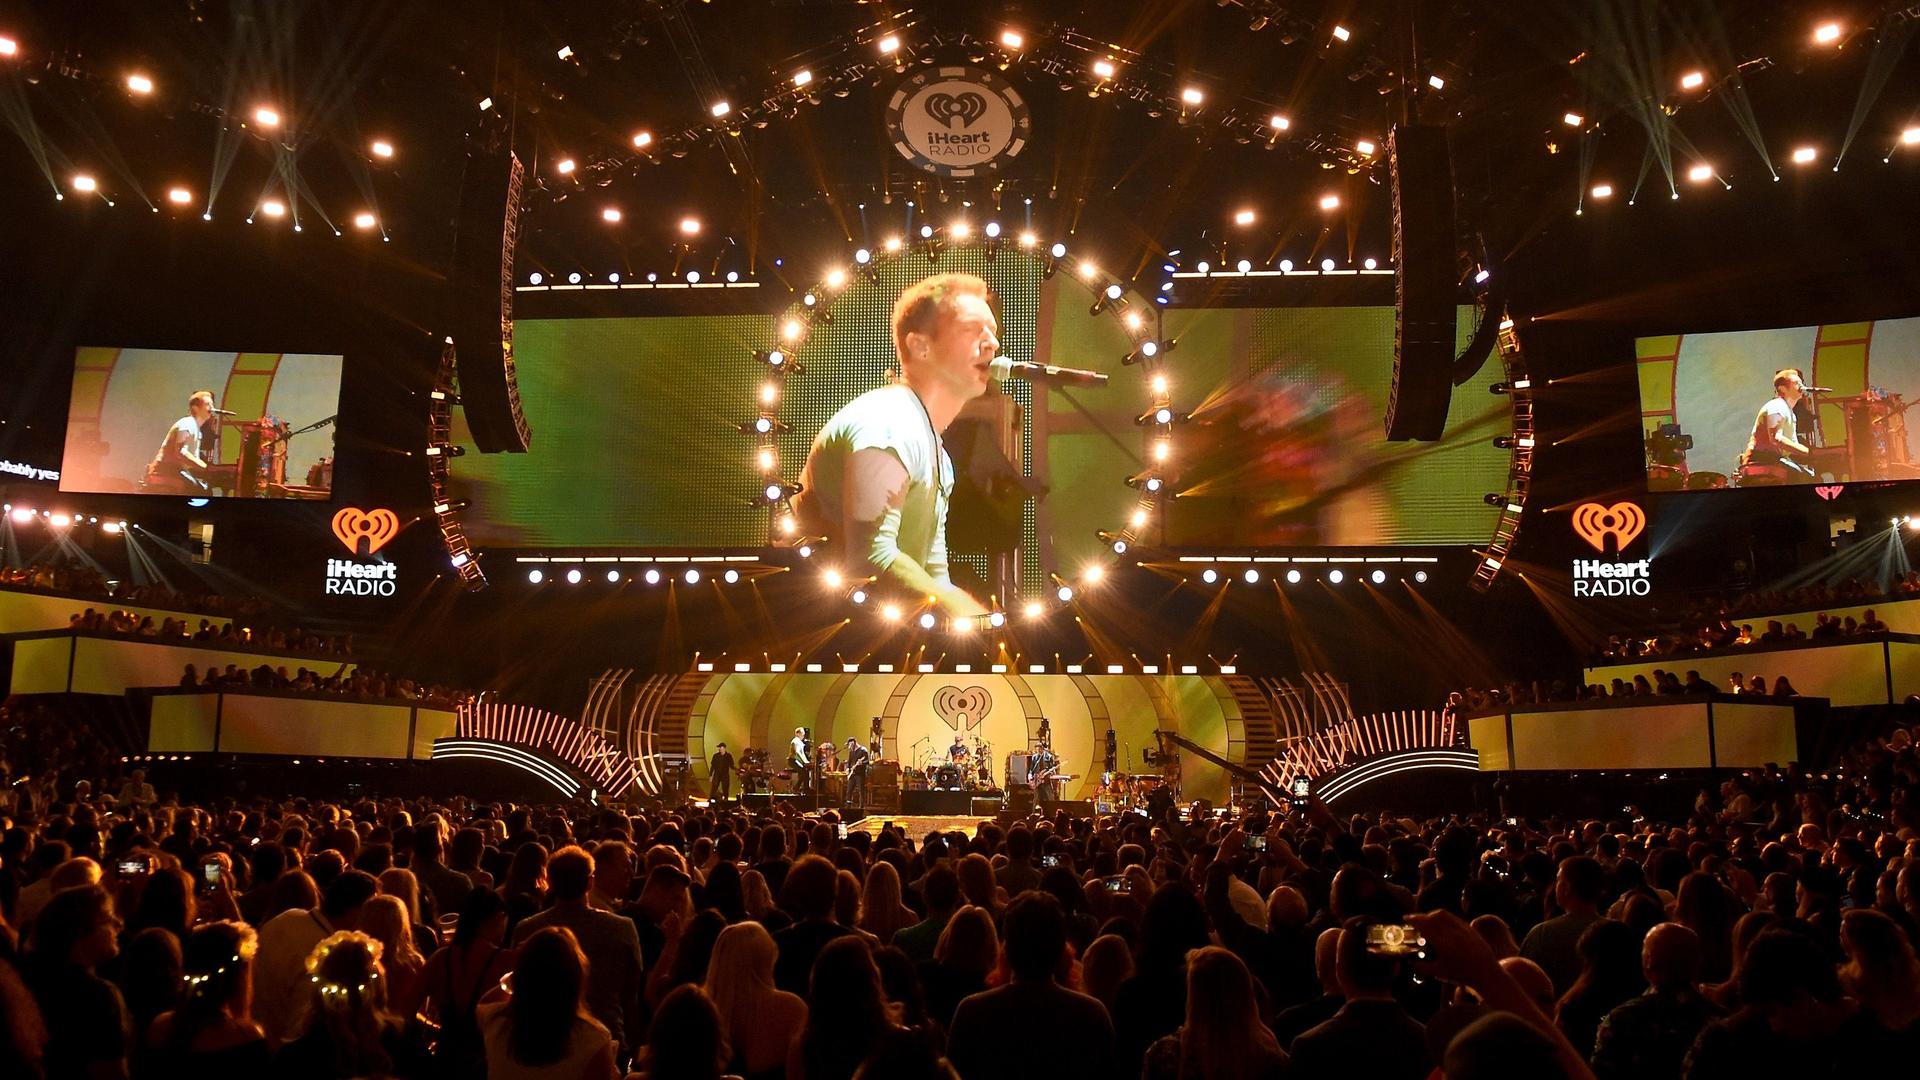  Pour «Everyday Life», son huitième album, le groupe Coldplay souhaite que la nouvelle tournée mondiale affiche un bilan carbone neutre. 